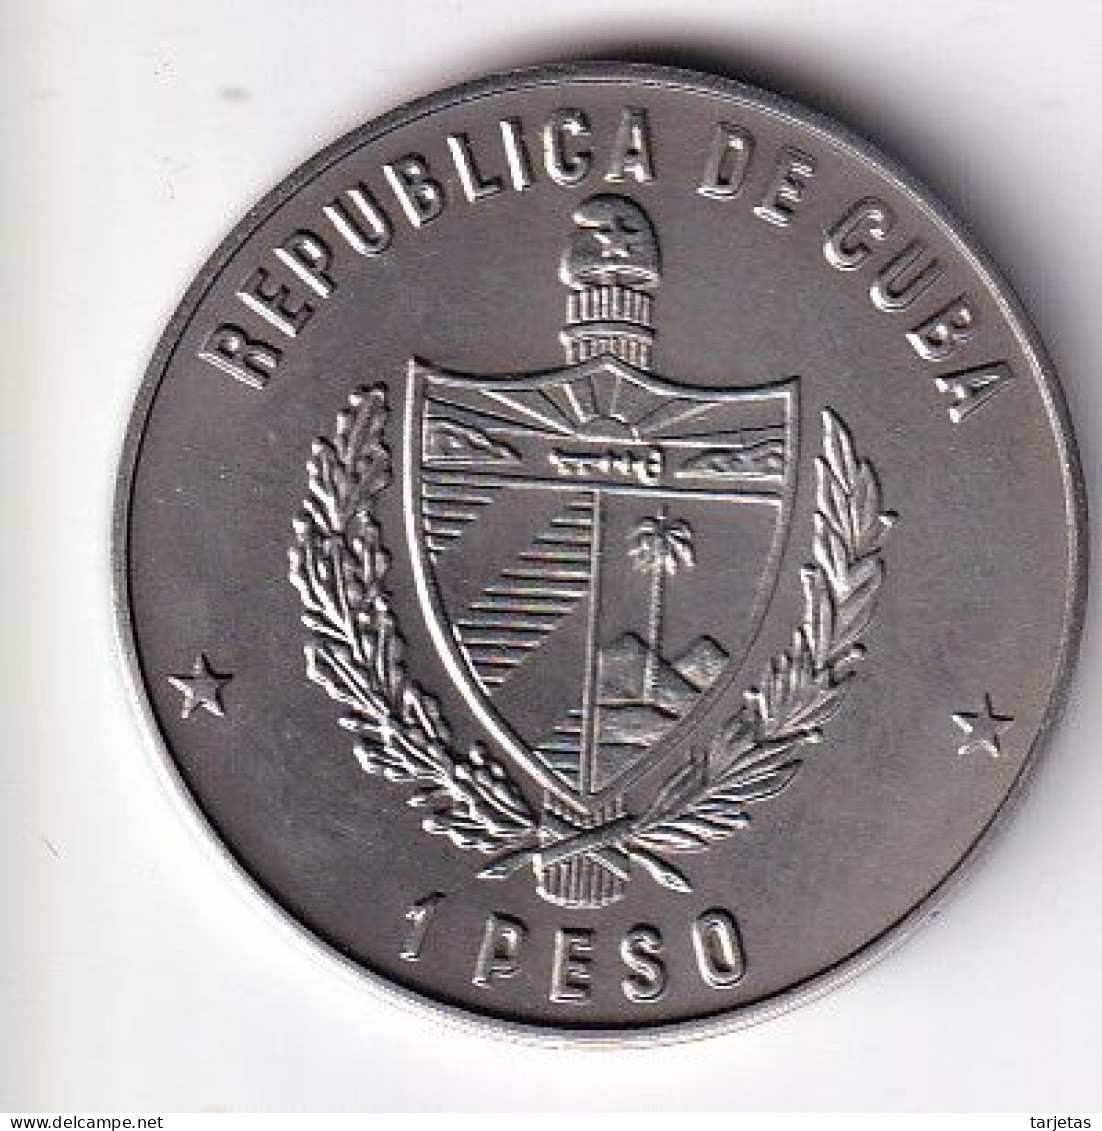 MONEDA DE CUBA DE 1 PESO DEL AÑO 1983 LOS ANGELES 1984 (COIN)  (NUEVA - UNC) - Cuba